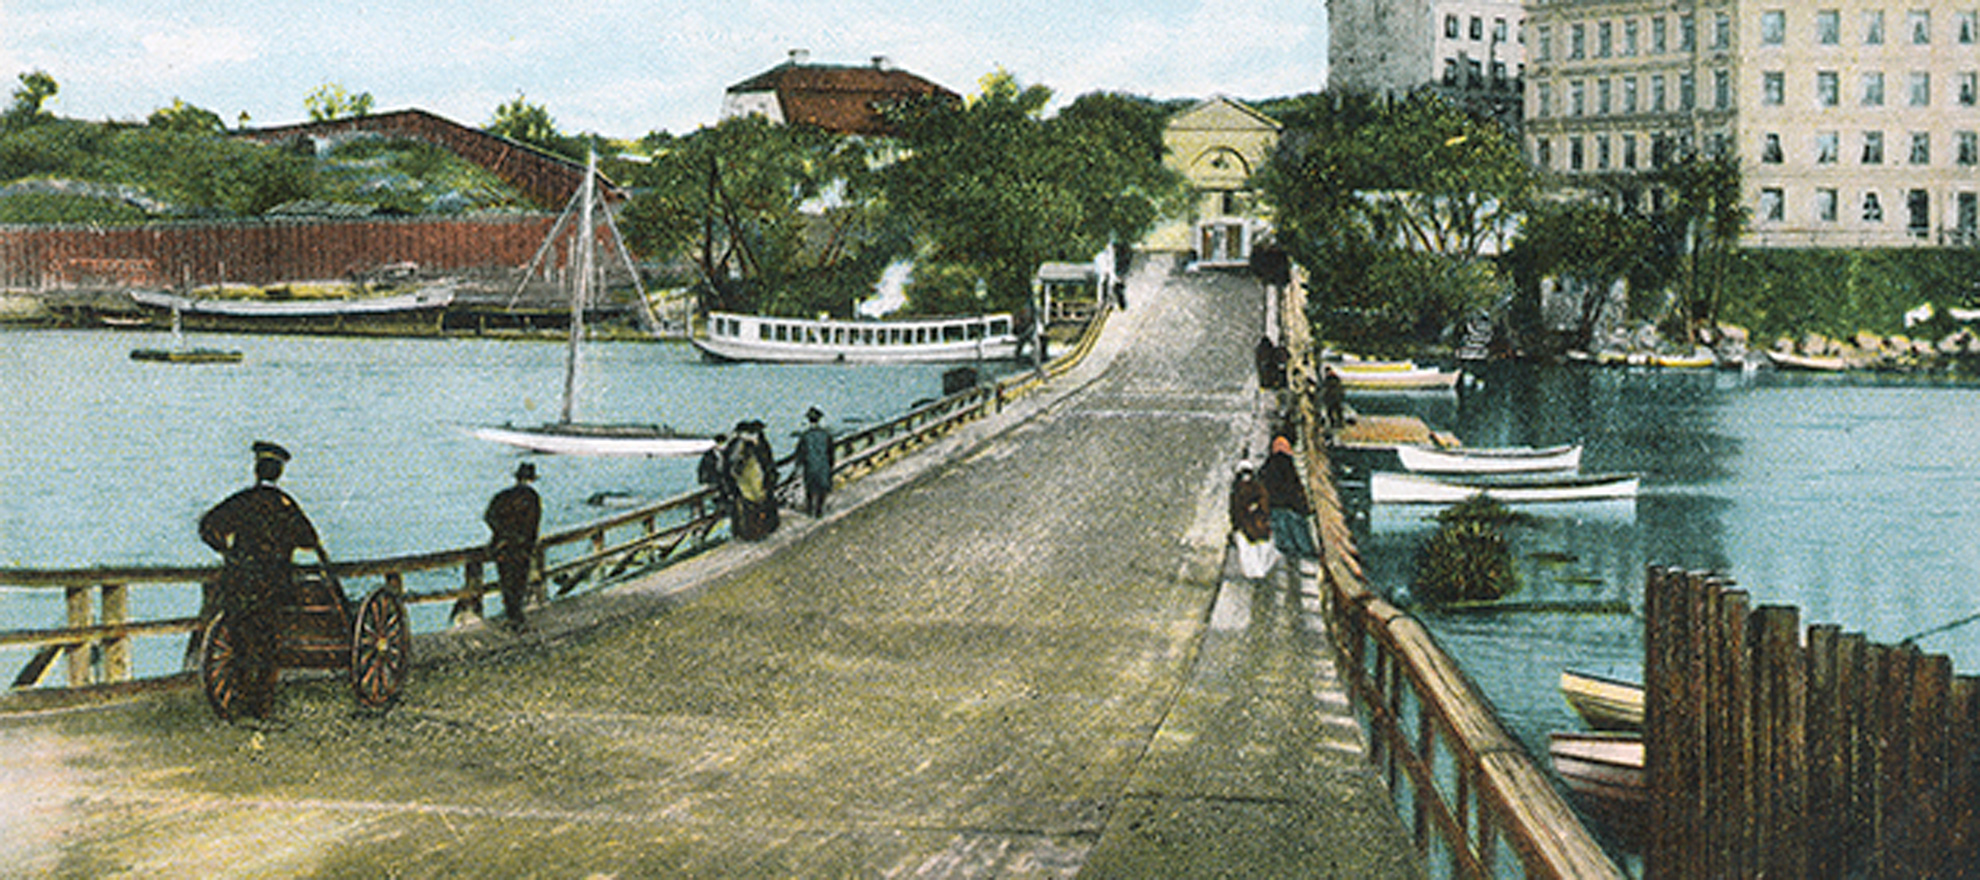 Kolorerat vykort över Liljeholmsbron och Hornstullen, före 1915